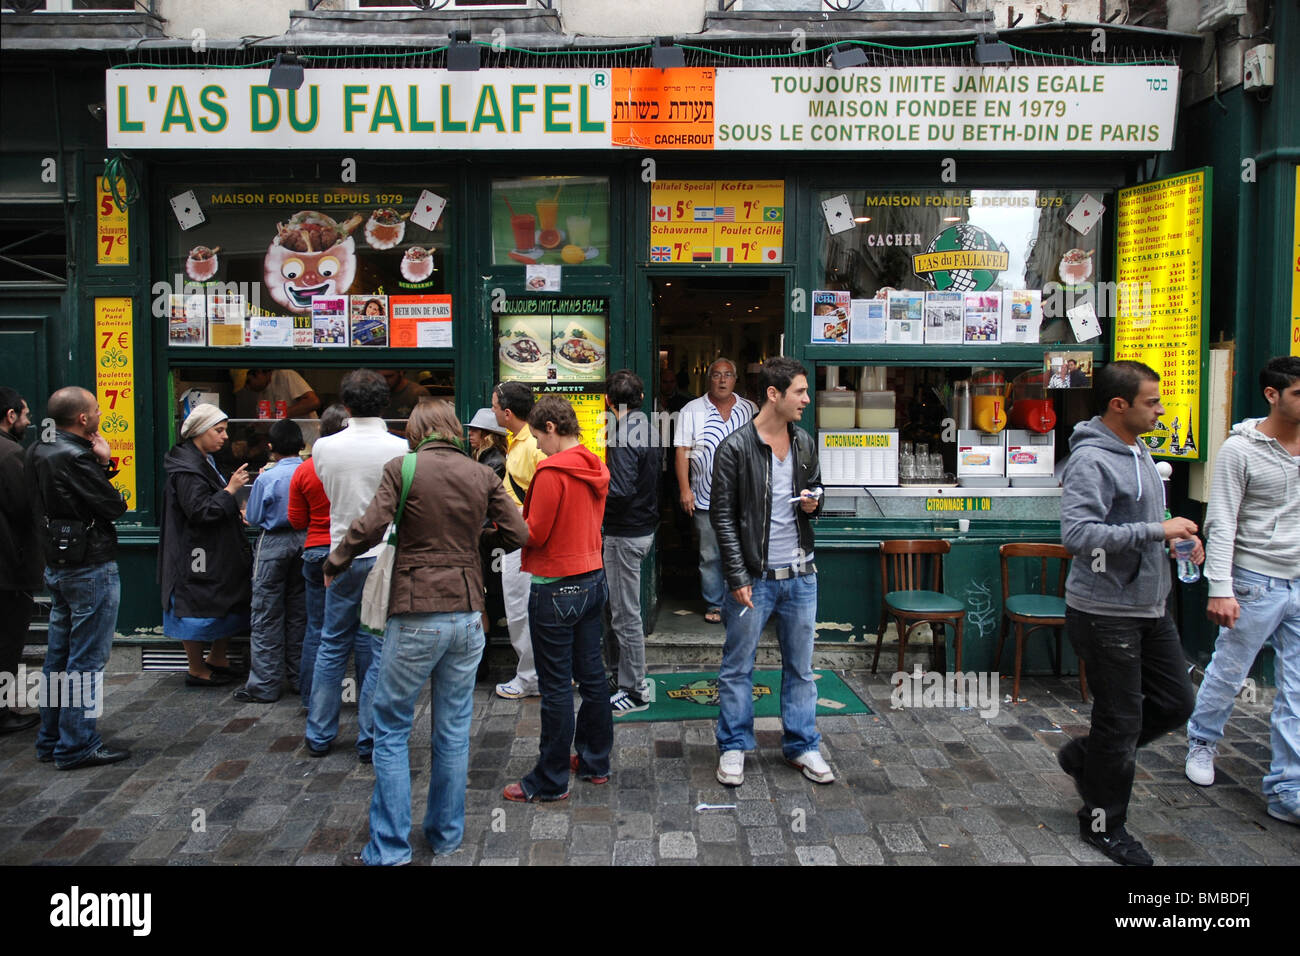 Falafel shop in the Marais district of Paris, France. Stock Photo